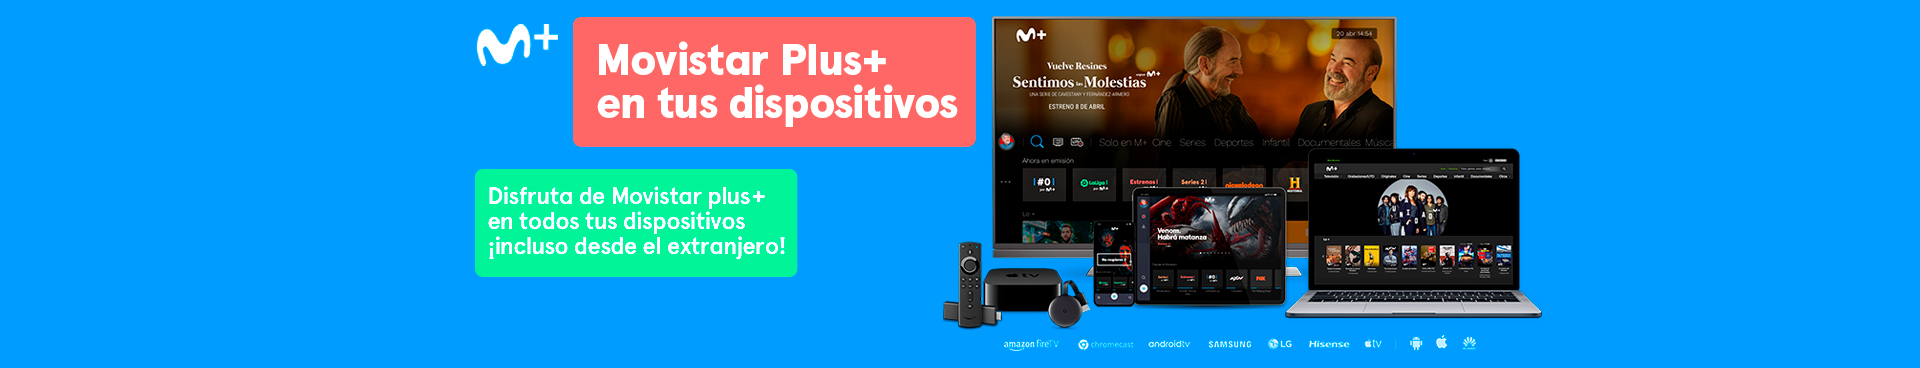 Las Supernenas online (2018) - Yomvi es Movistar Plus+ en dispositivos -  Movistar Plus+